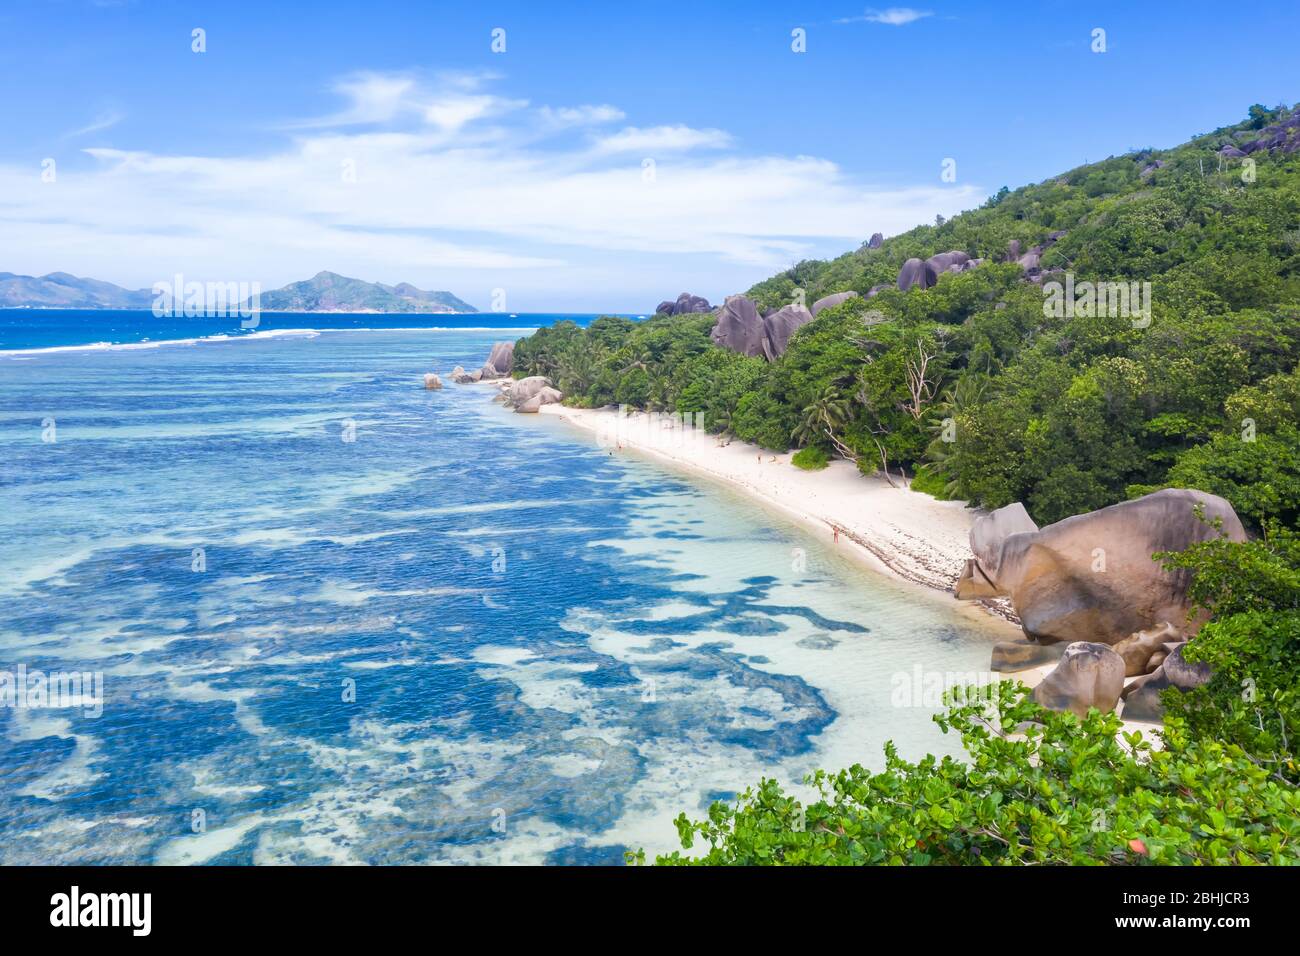 Seychellen Anse Source d'Argent Strand La Digue Insel Landschaft Landschaft Natur Urlaub Meer Drohne Ansicht Luftbild Entspannen Stockfoto